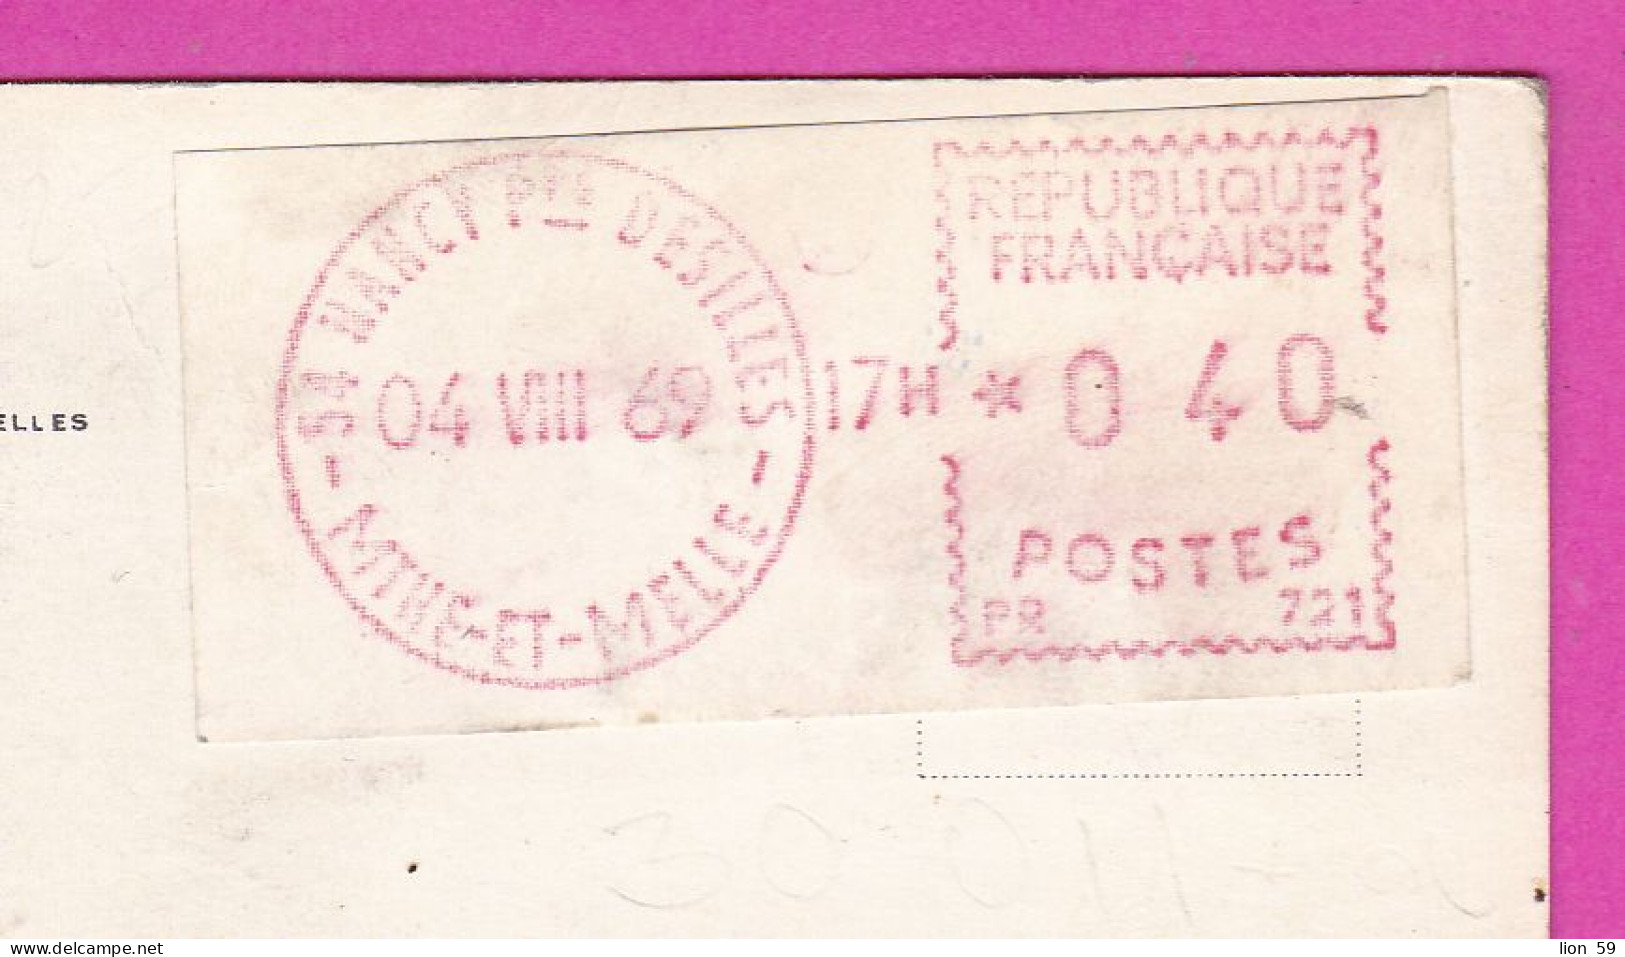 294104 / France - PARIS Place De L'Opéra PC 1969 NANCY Desilles USED 0.40 Fr. - 04.08.1969 Machine Stamps (ATM) - 1969 Montgeron – White Paper – Frama/Satas